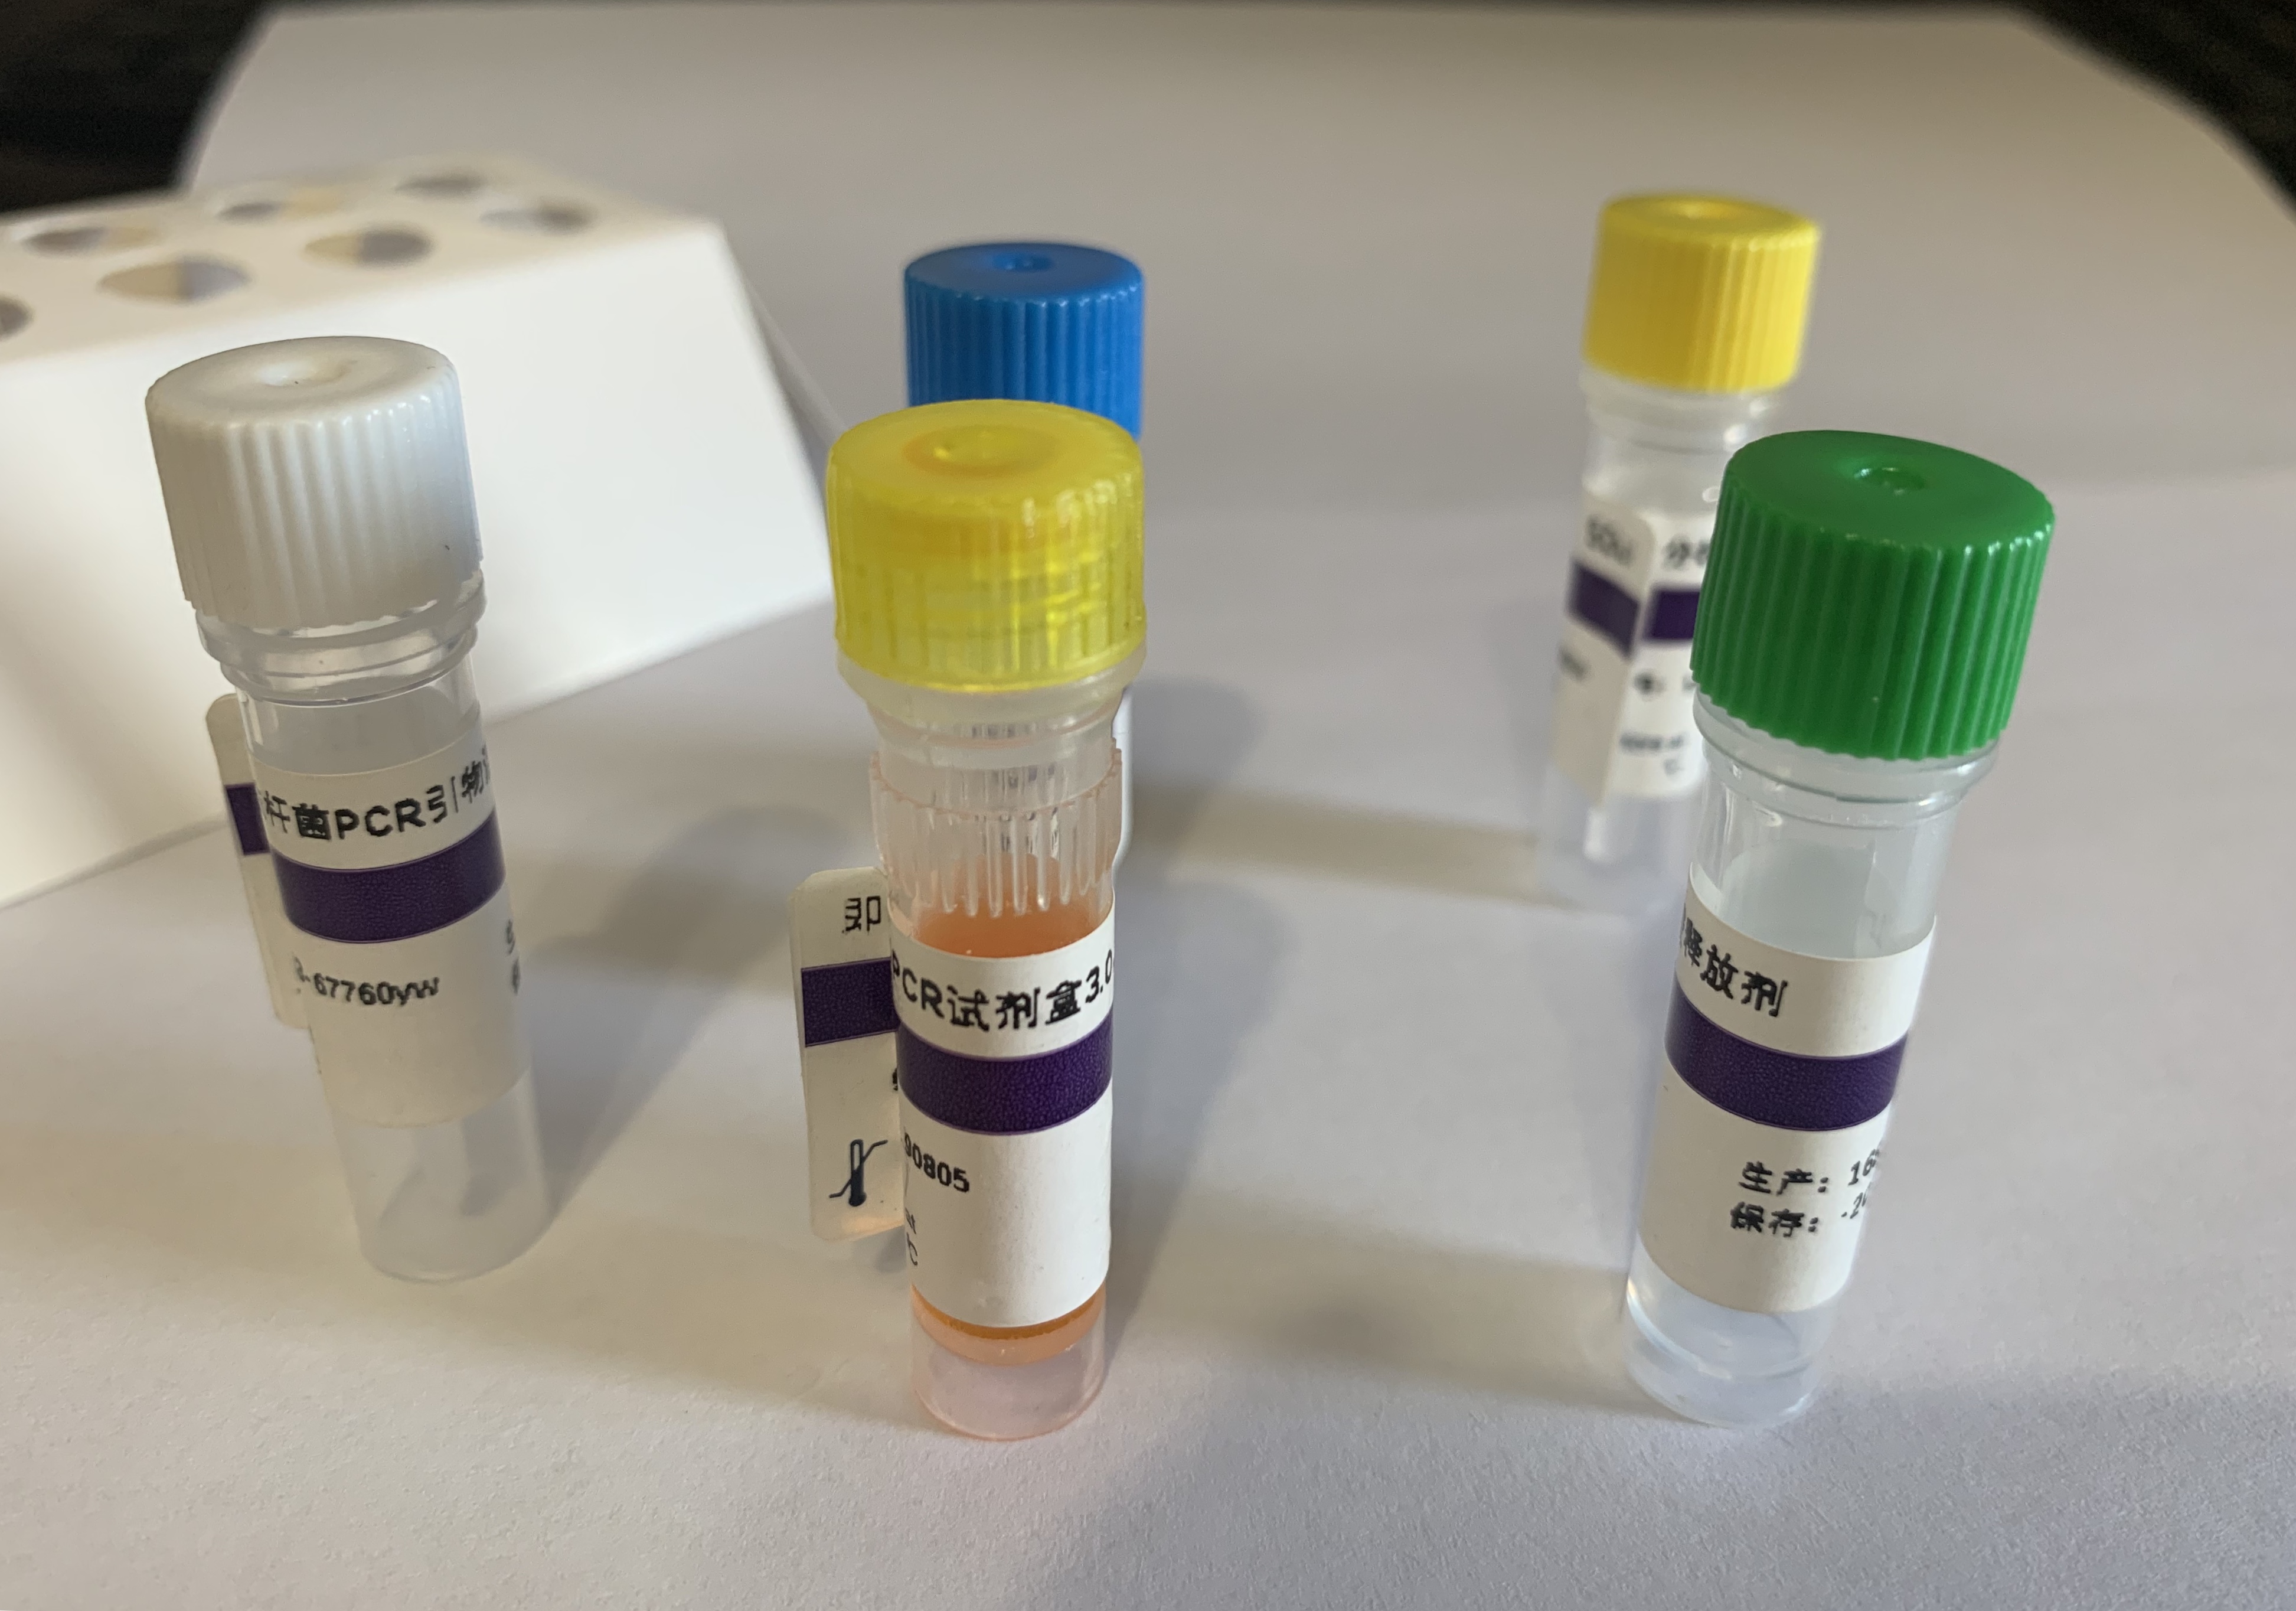 嗜麦芽窄食单胞菌PCR试剂盒